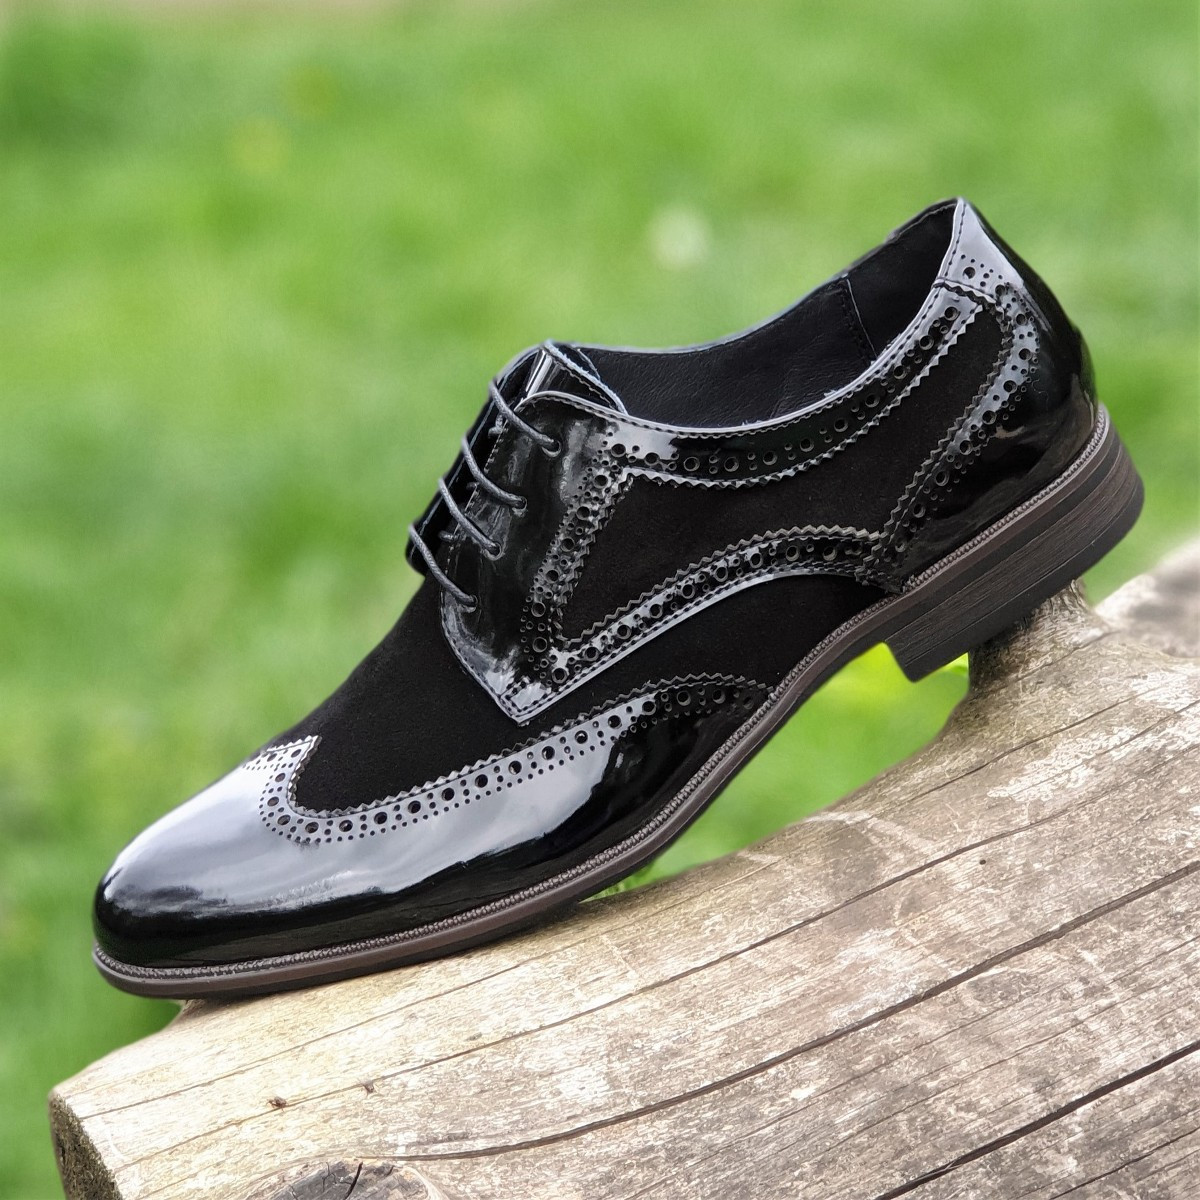 Туфли мужские кожаные модельные лаковые броги на шнурках черные ( код 